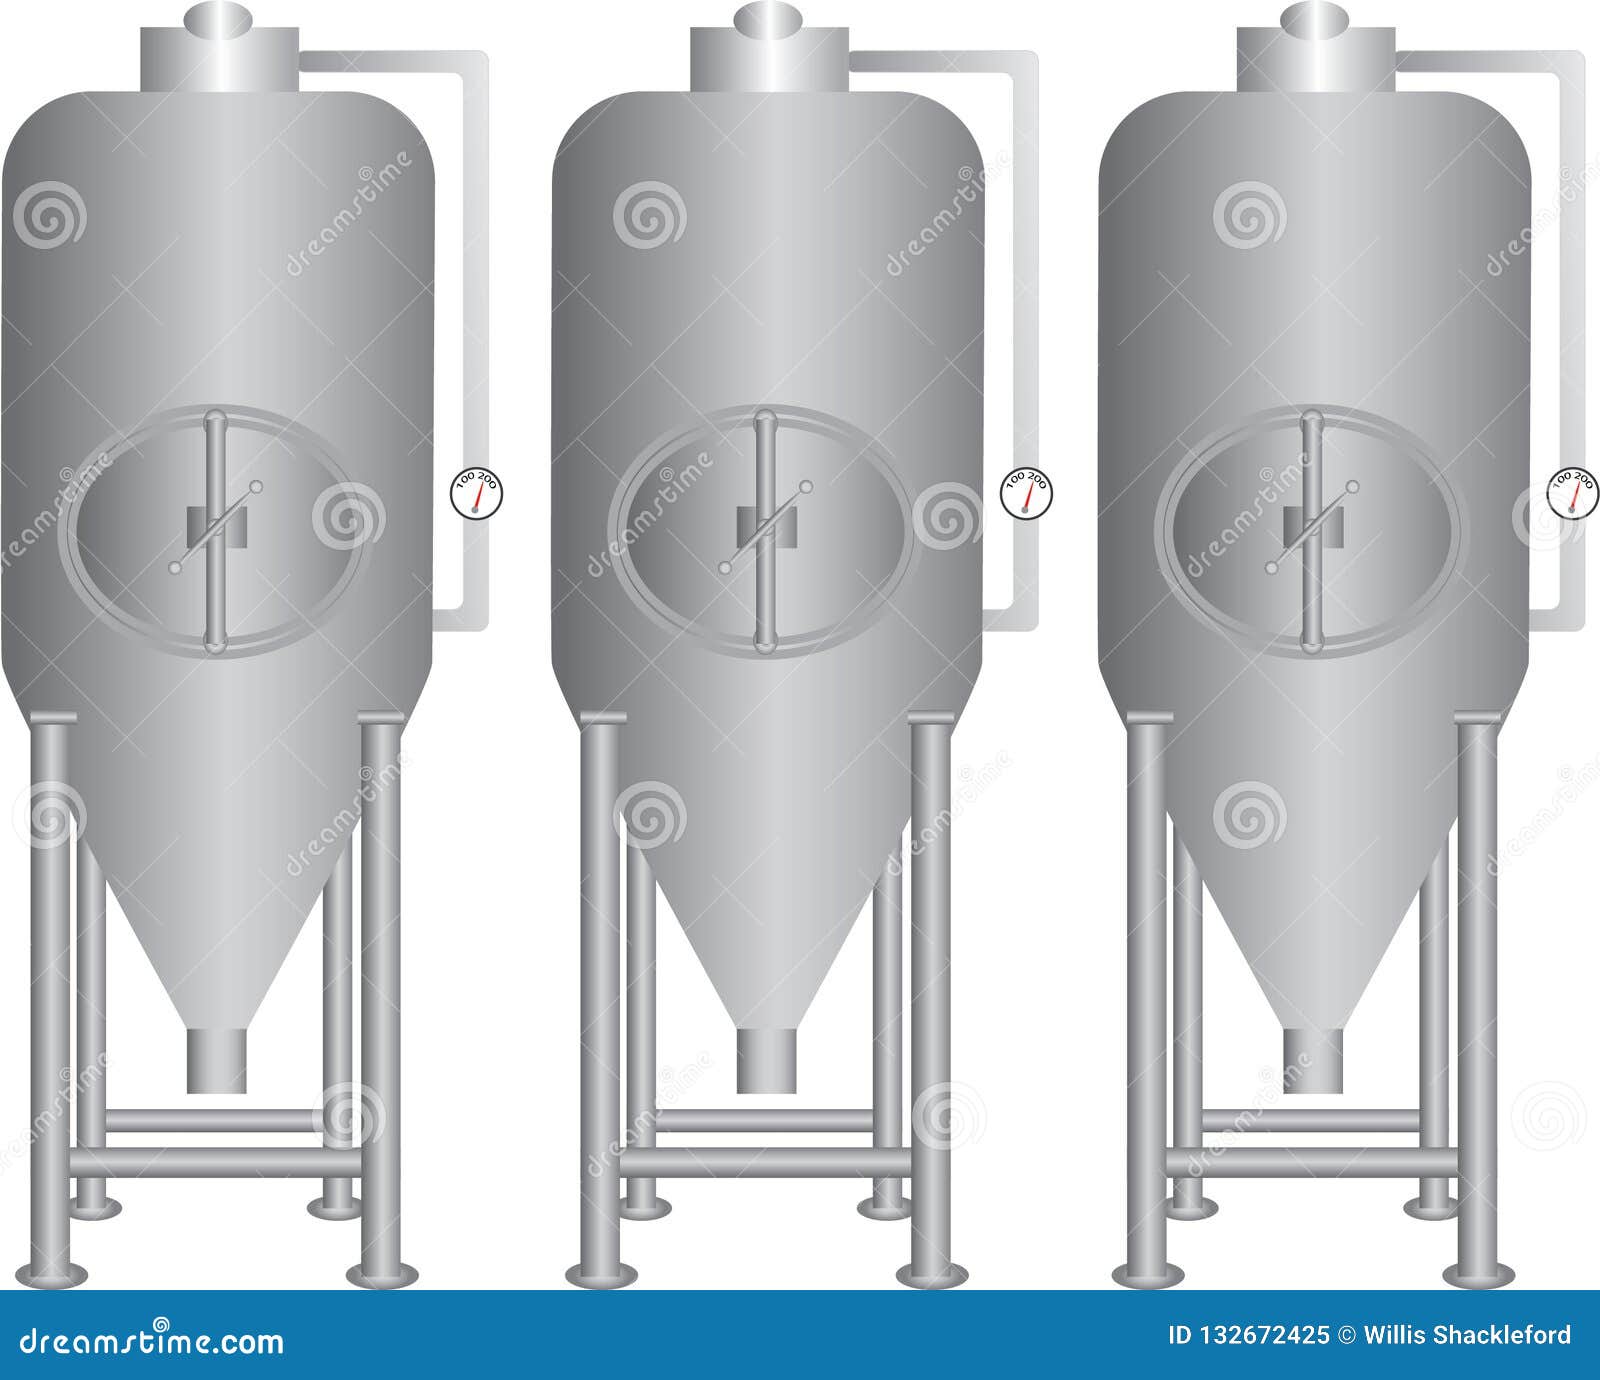 beer fermentation equipment stainless steel